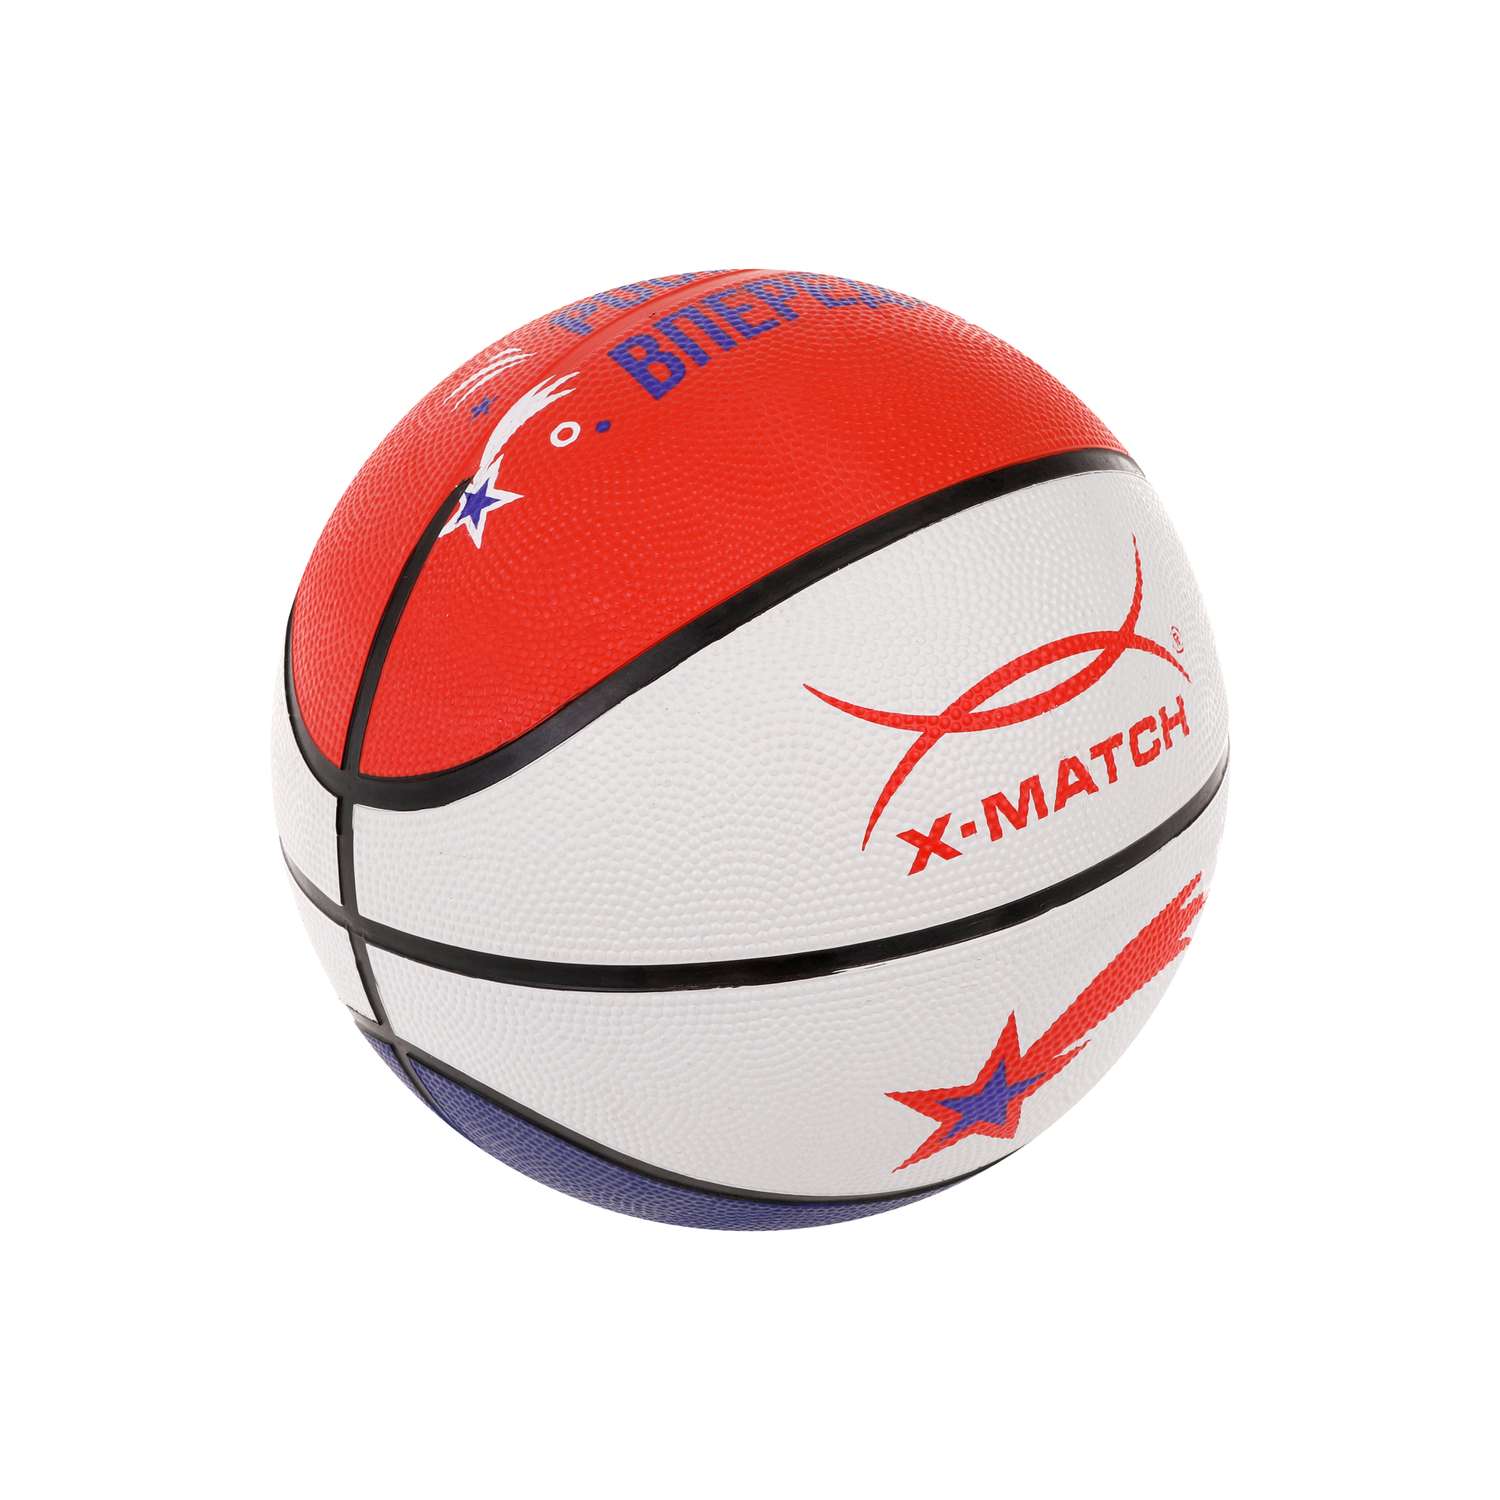 Мяч баскетбольный X-Match размер 5 резина - фото 4